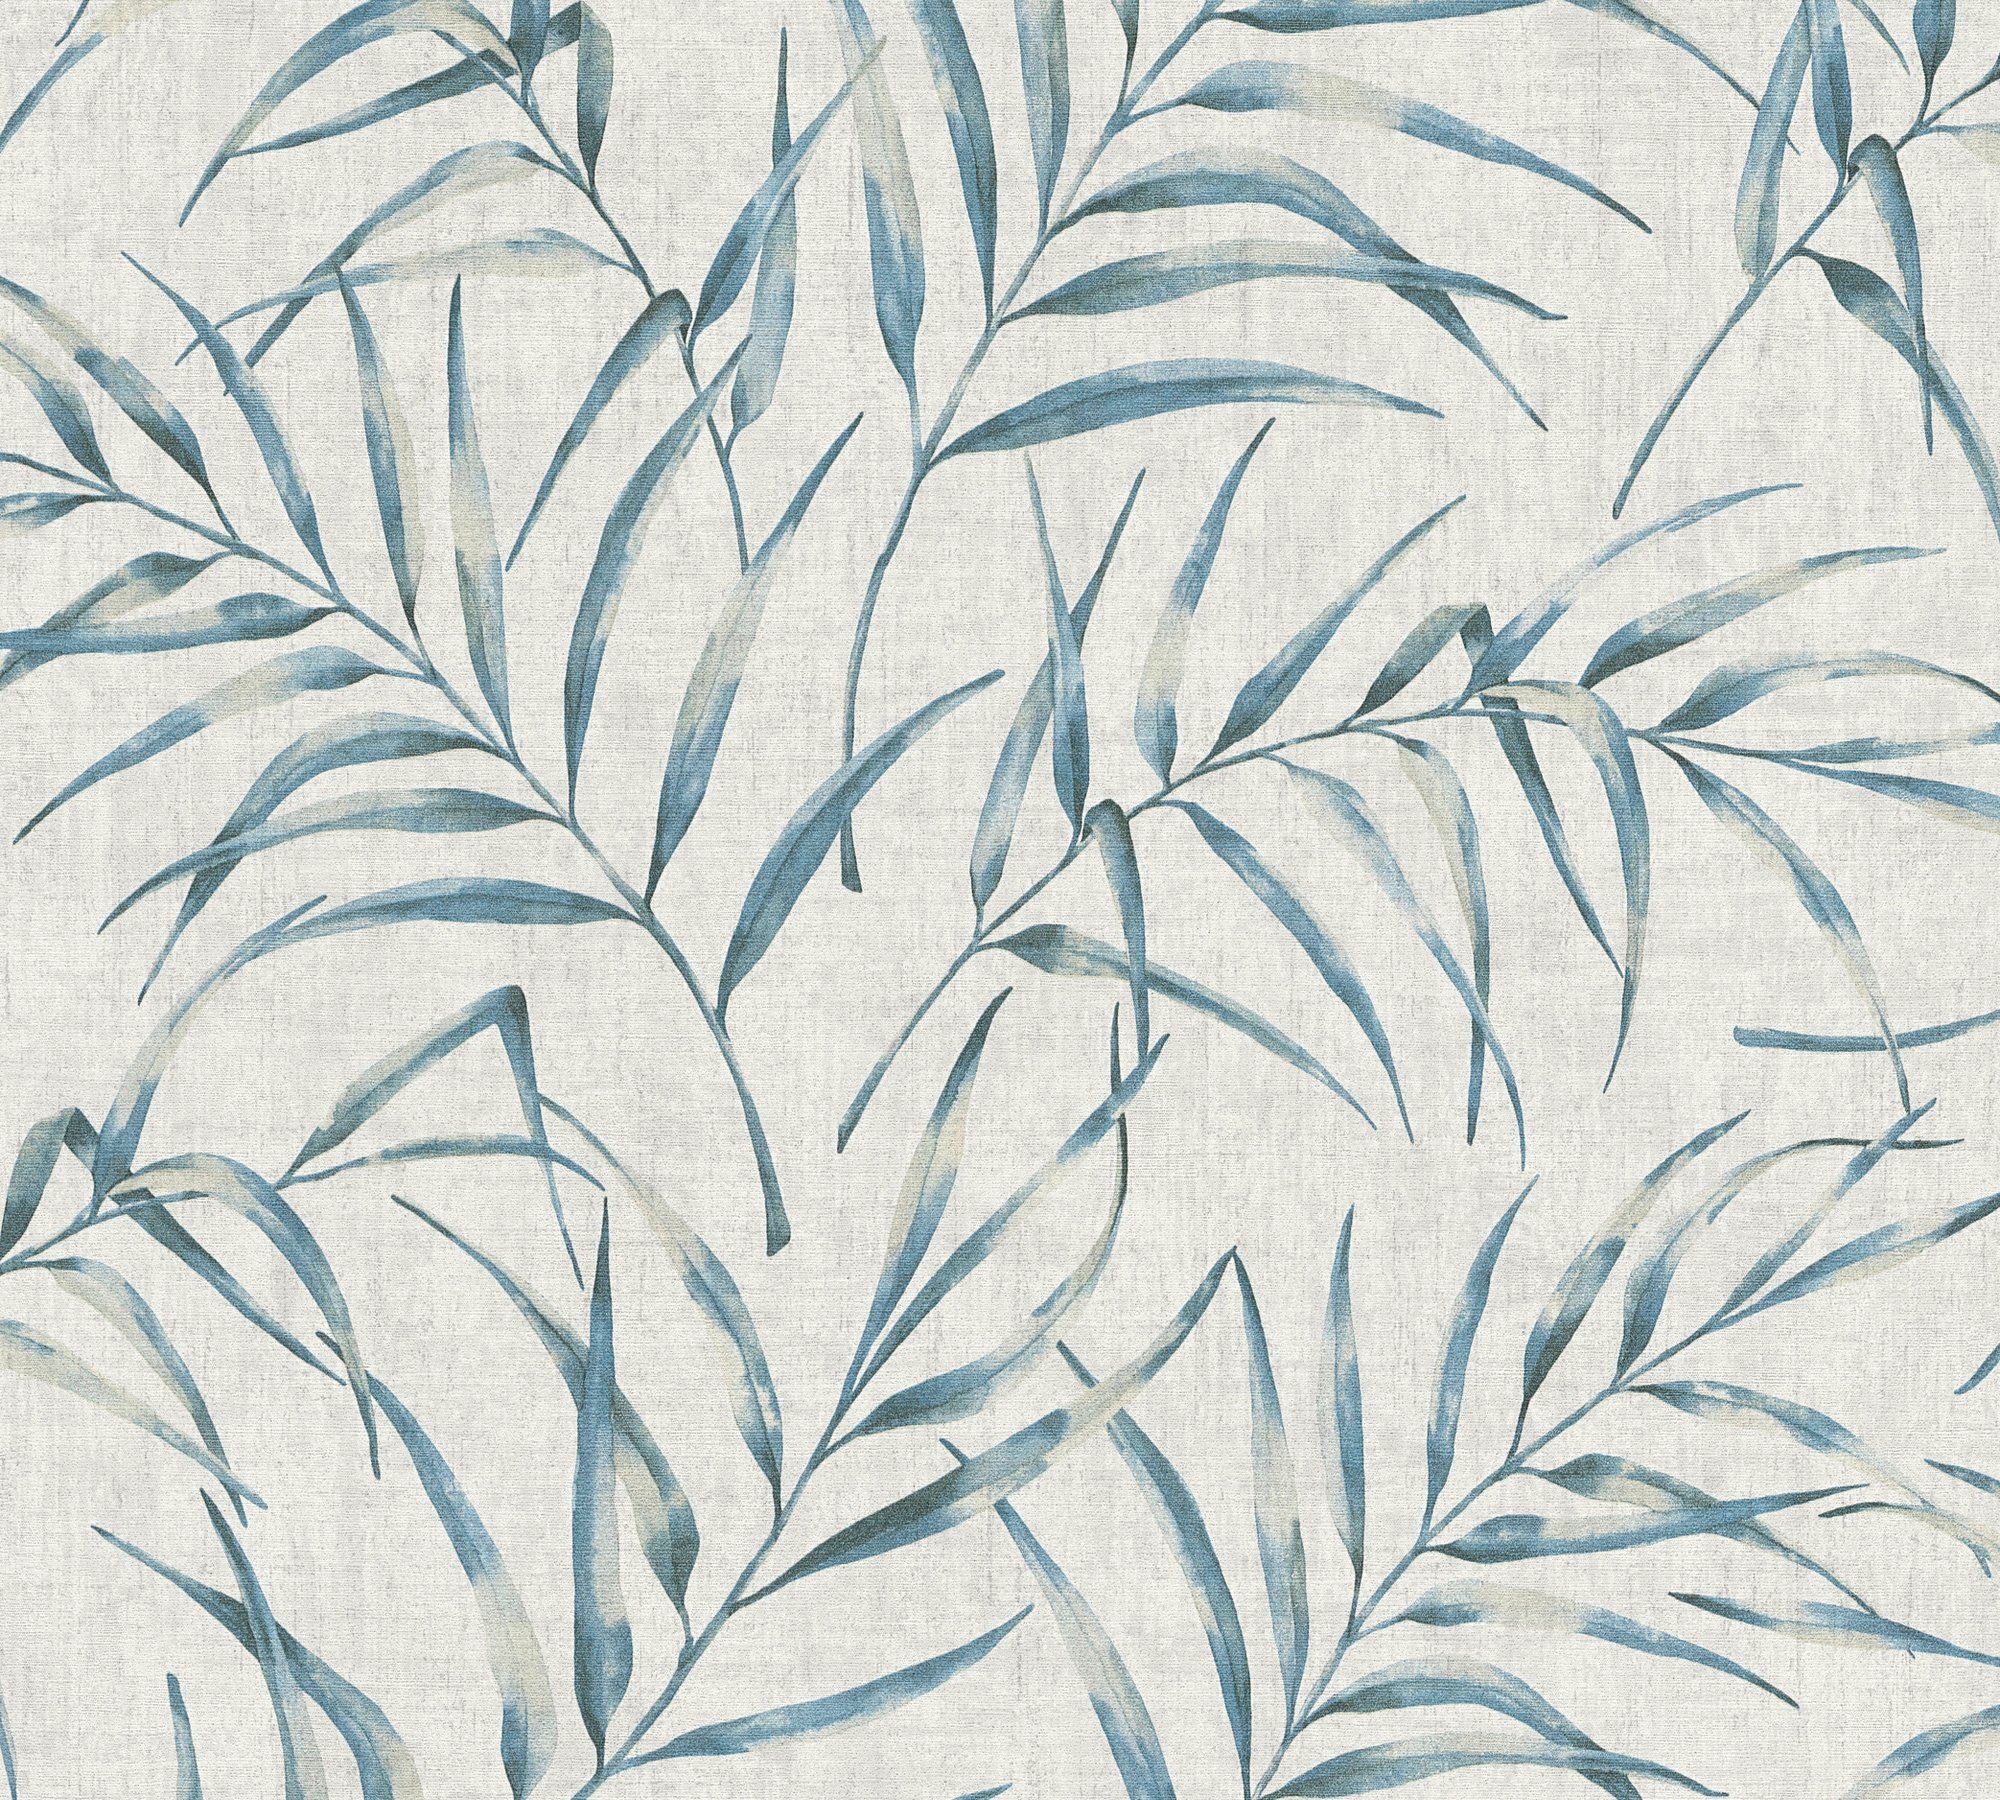 in Création Dschungeltapete Vliestapete grau/blau mit floral, Palmen Greenery Dschungel Tapete A.S. Palmenprint Optik,